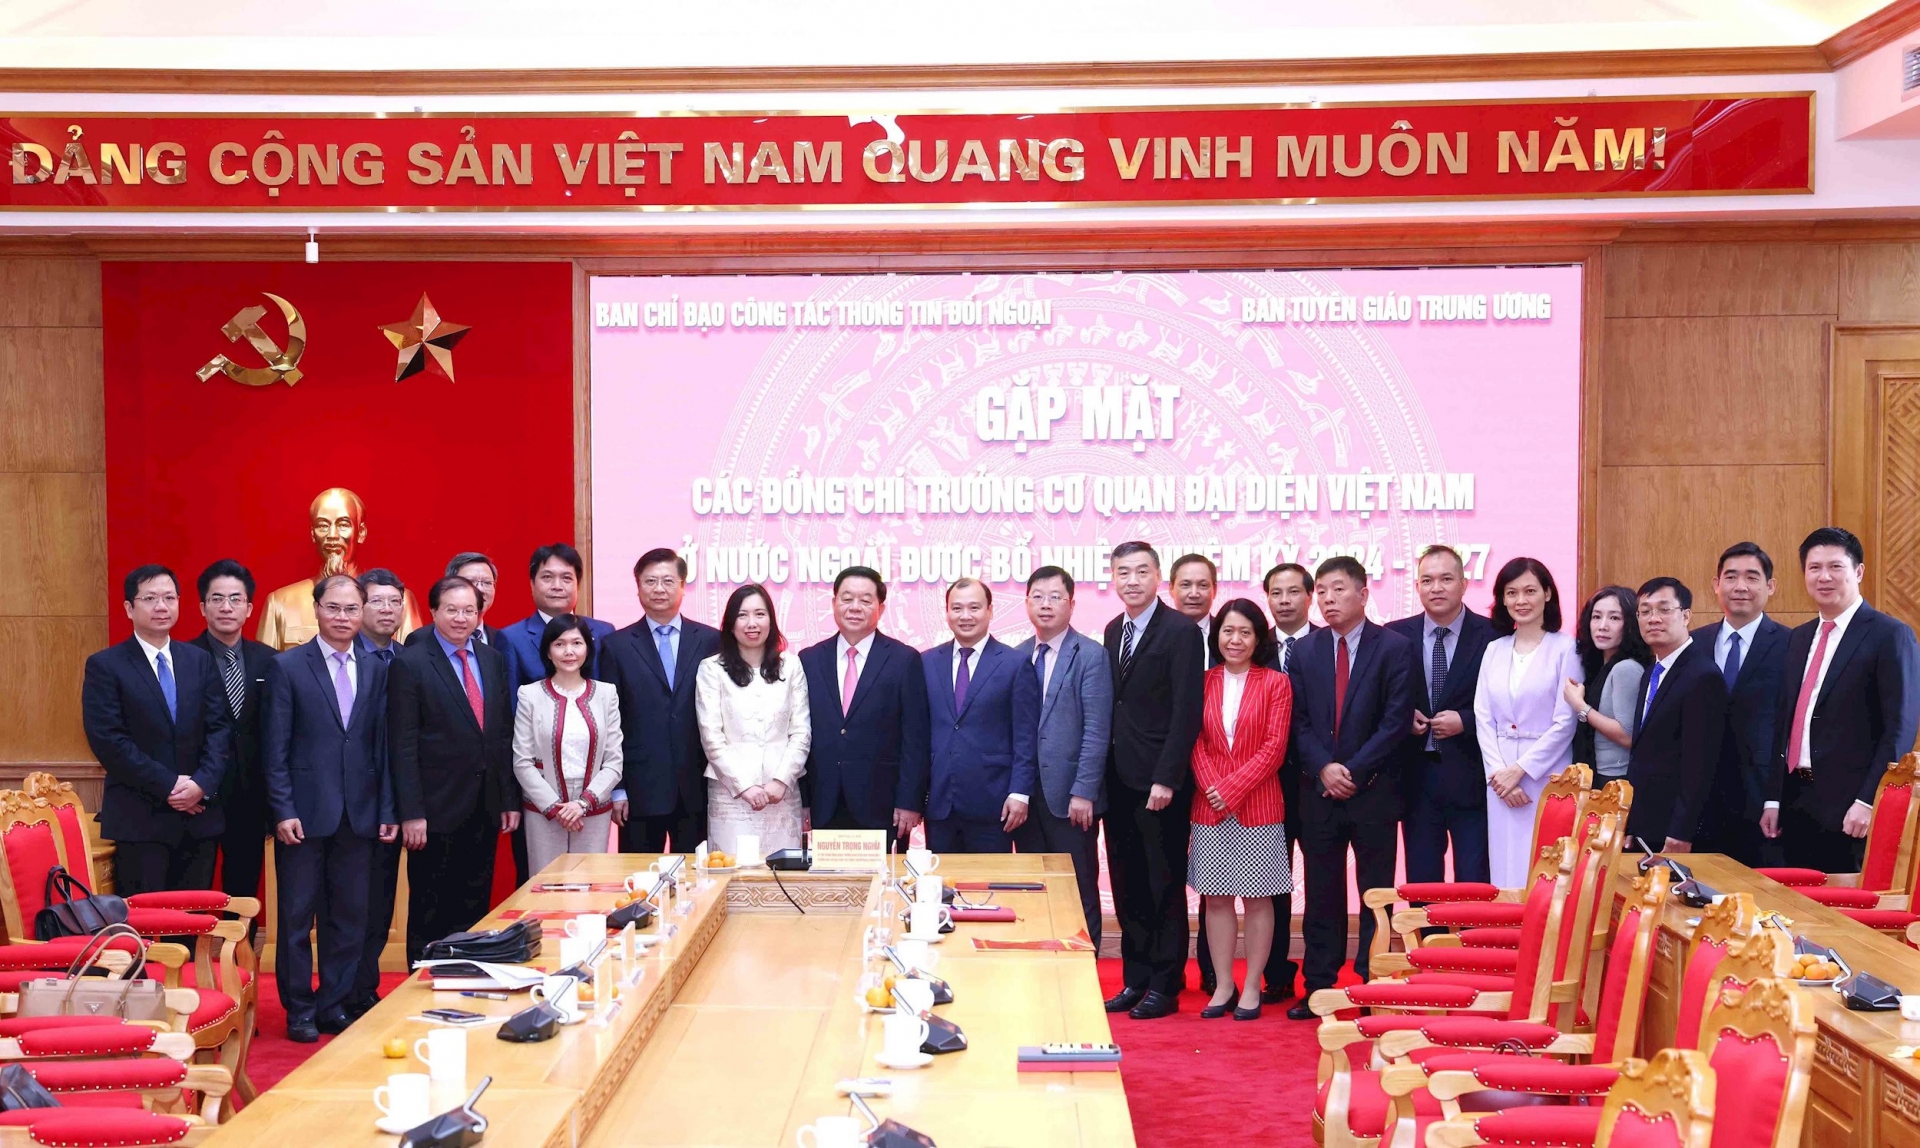   越共中央宣教部部长阮仲义与各位驻外使节合影。